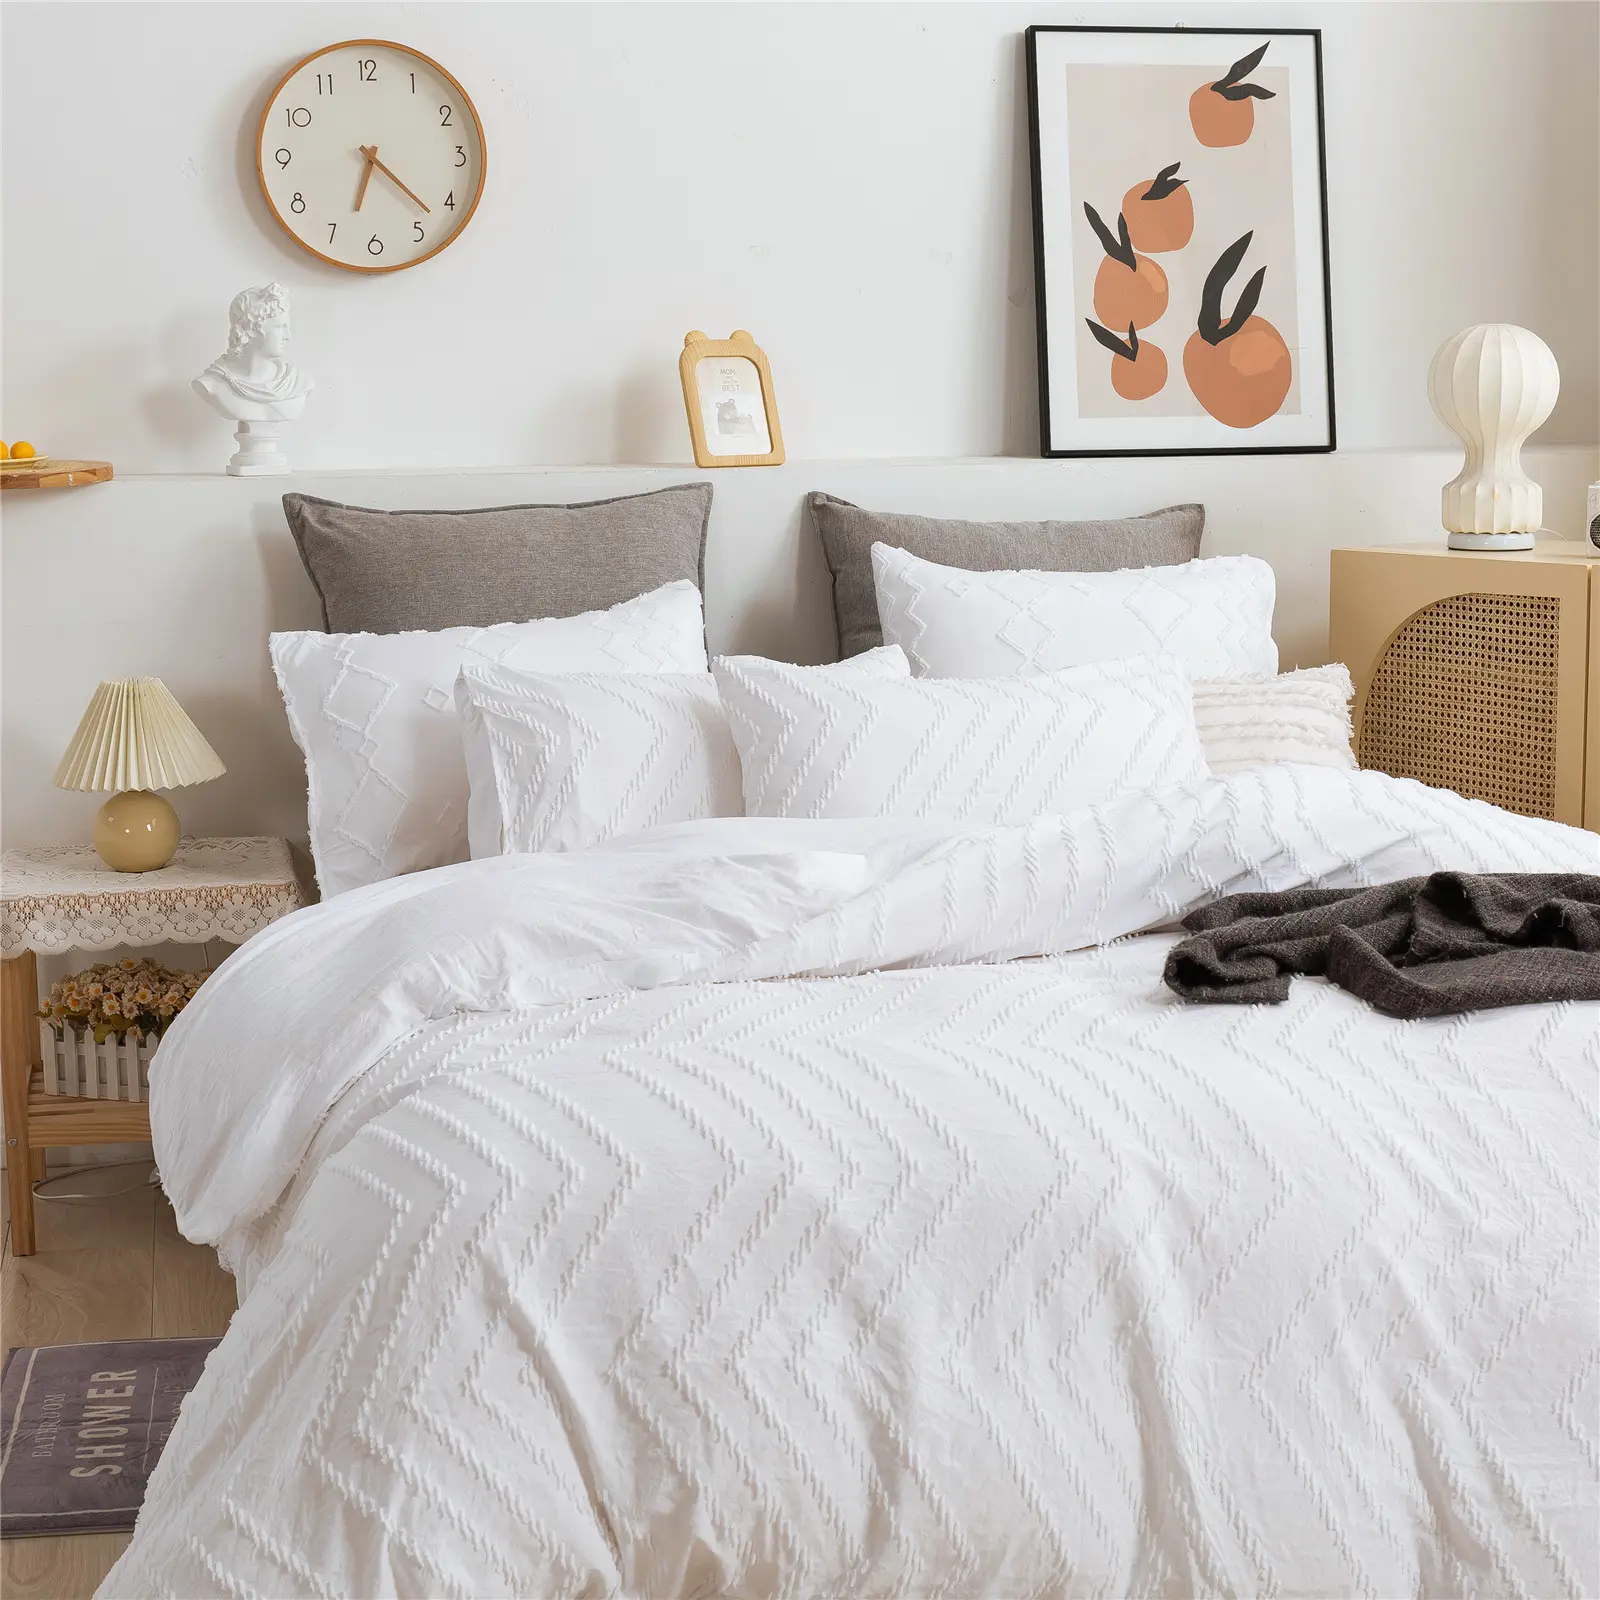 Top Home Textile Quality Brushed duvet cover Jacquard bedding set Microfiber bedset